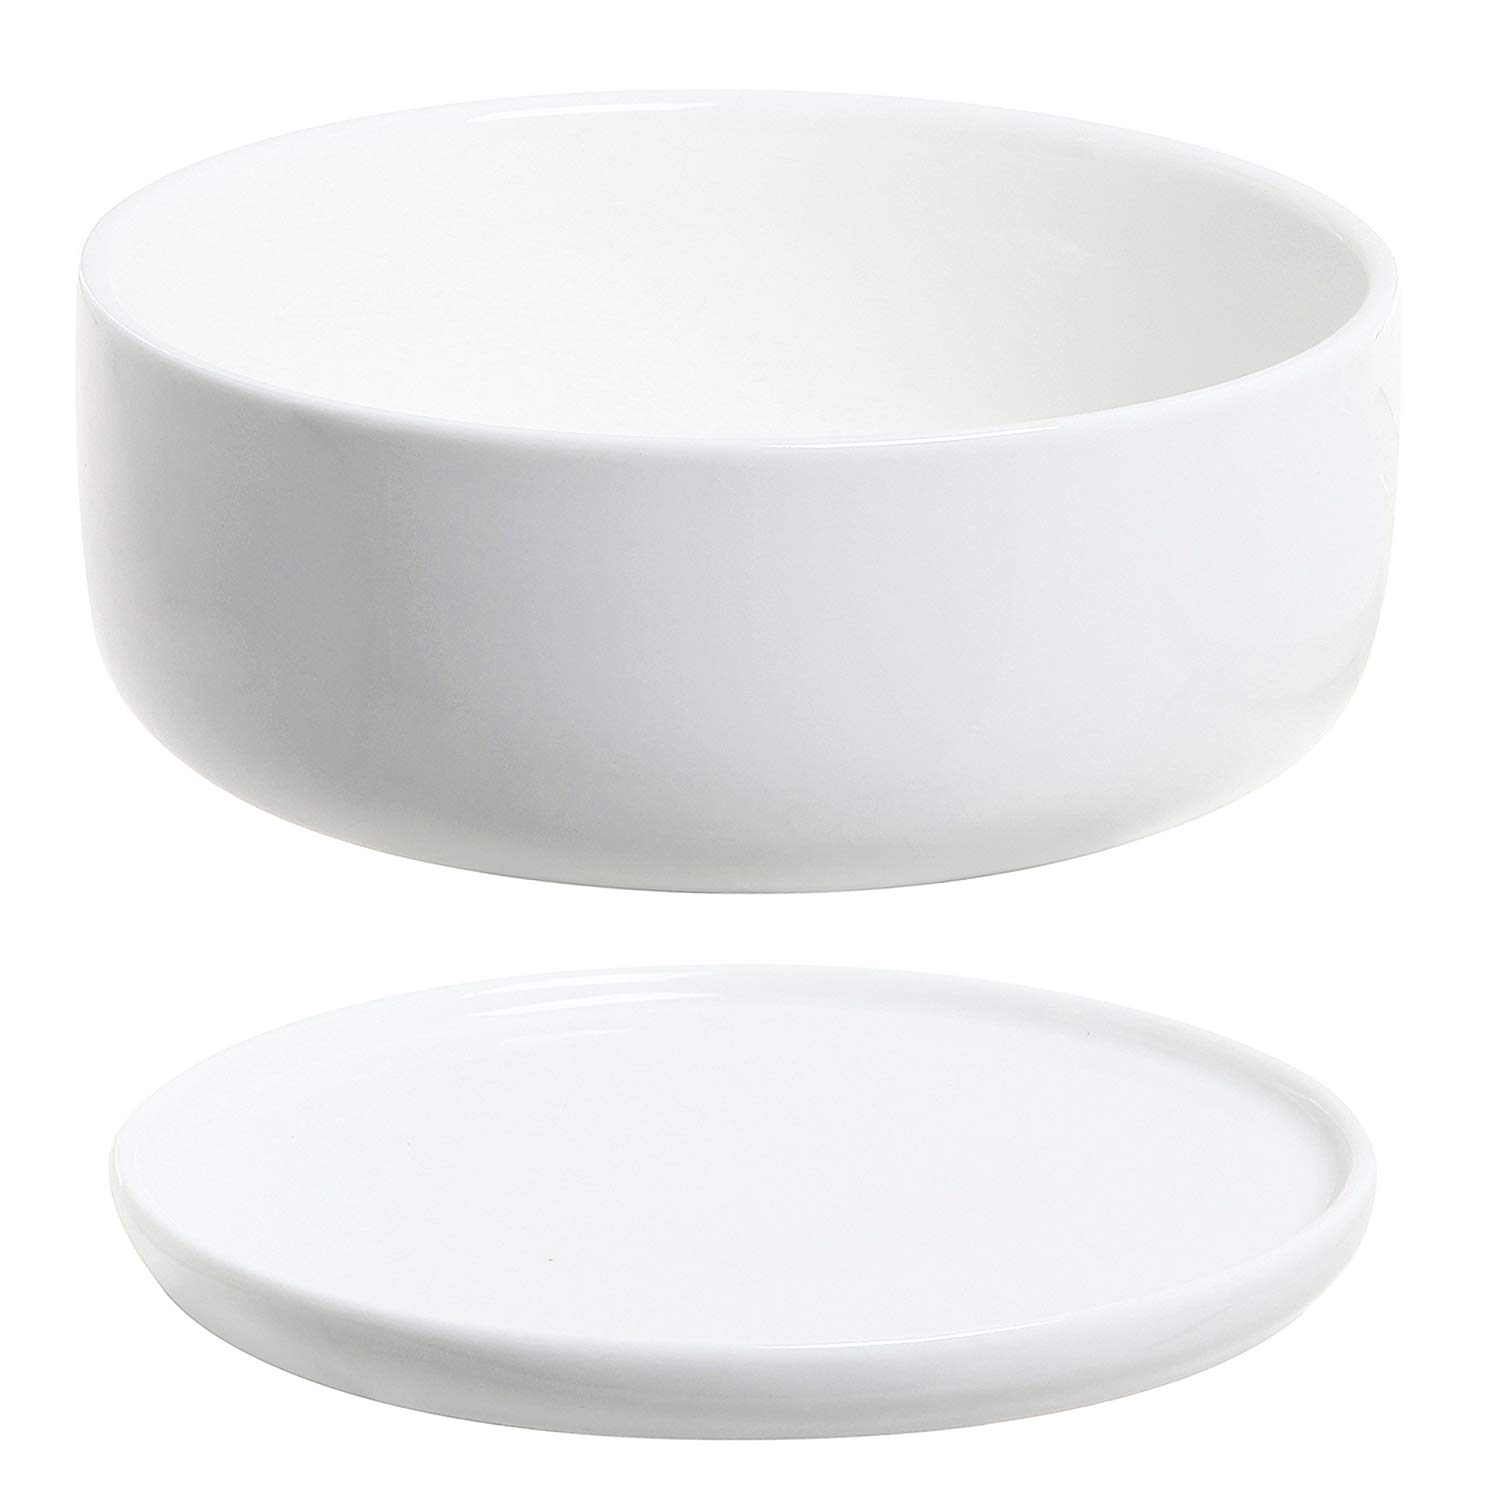 Amazon.com: 6 inch Modern White Ceramic Round Designer Succulent ...